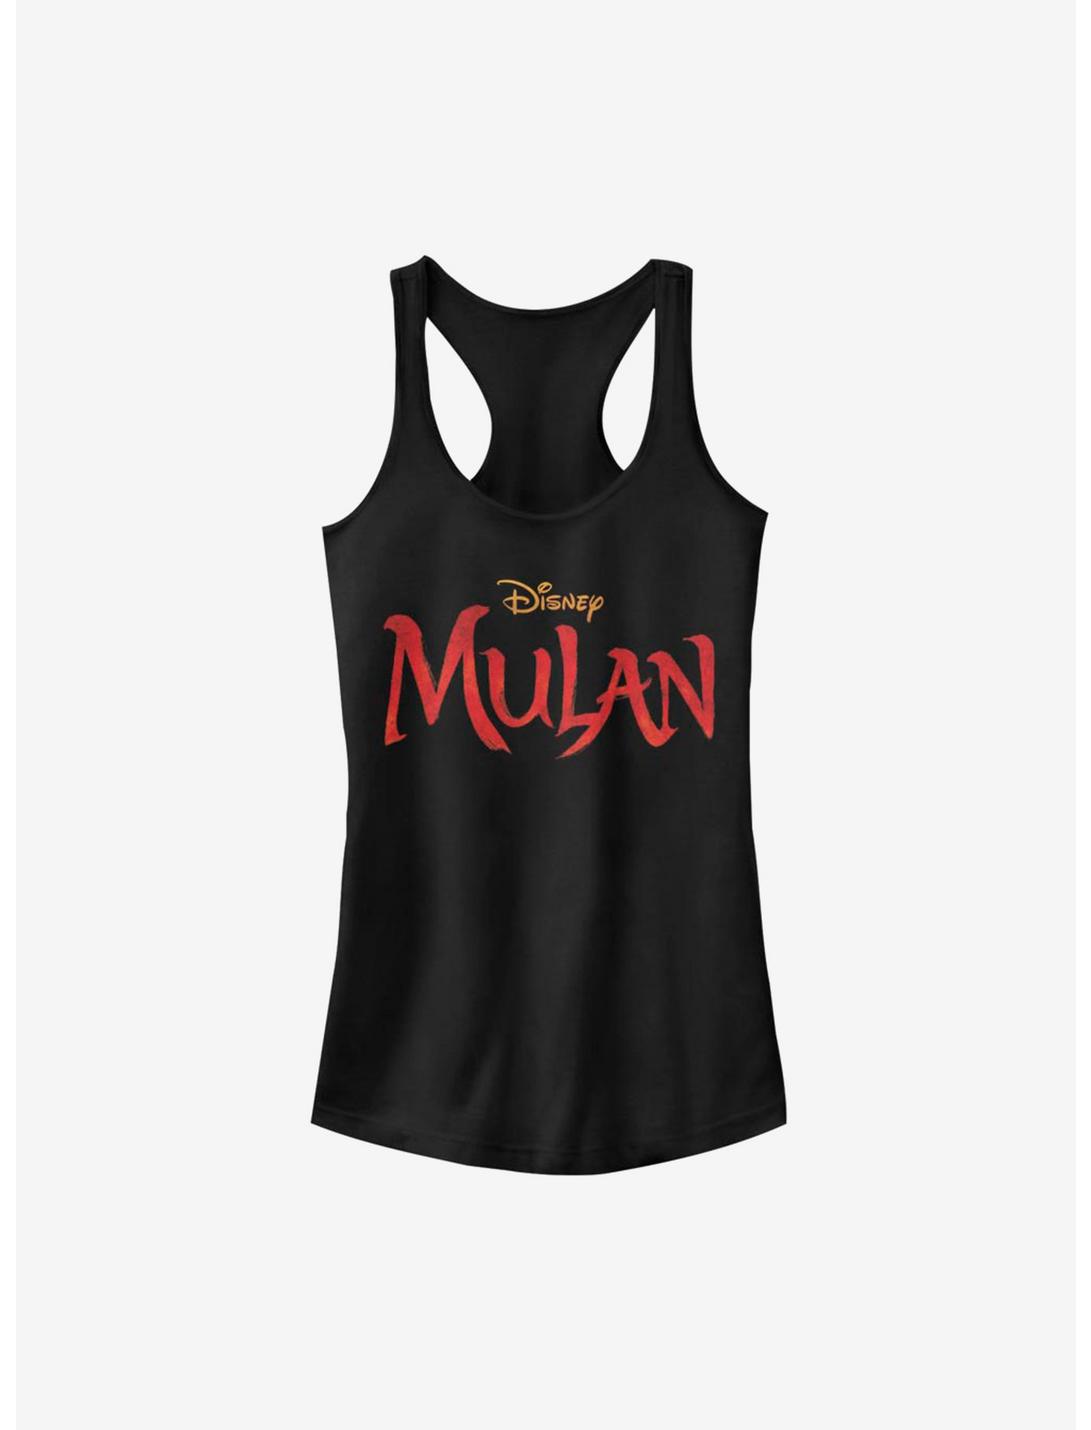 Disney Mulan Live Action Logo Girls Tank, BLACK, hi-res